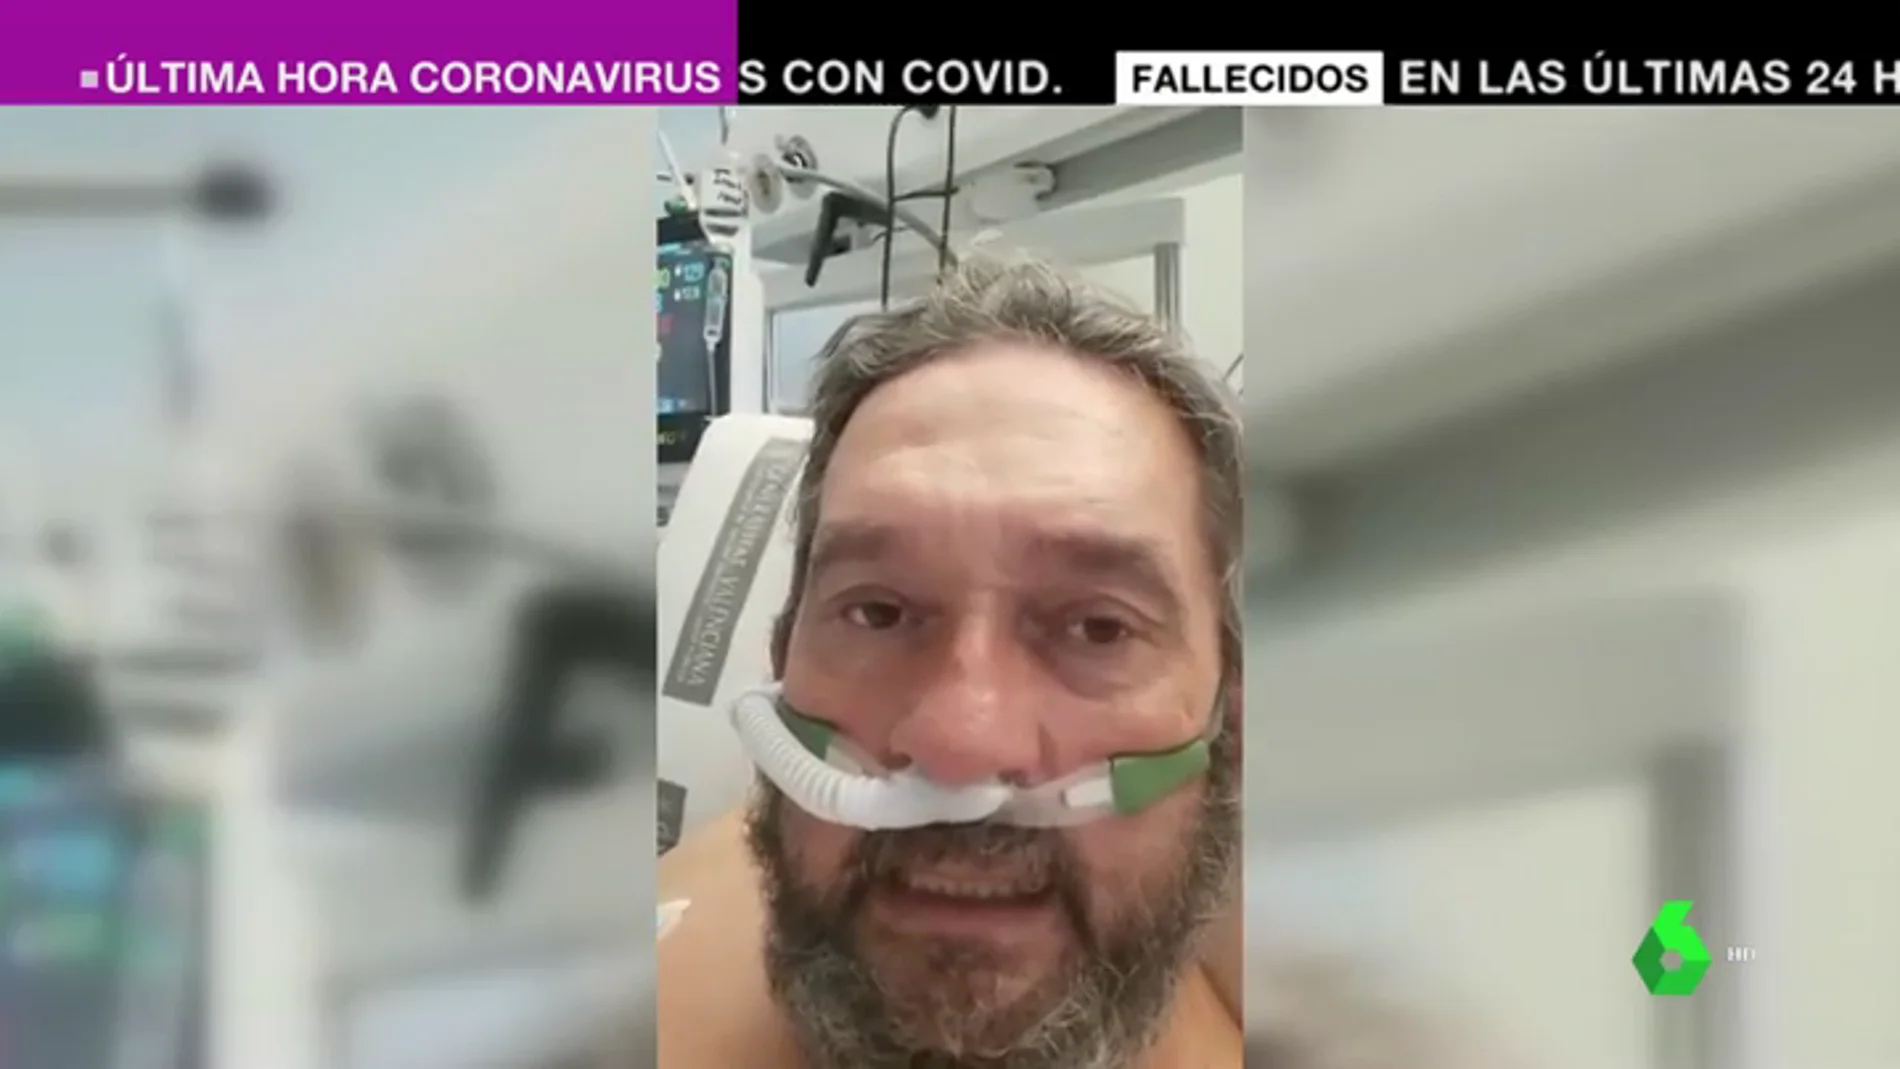 El terrible relato de un anestesista ingresado en la UCI por coronavirus: "He visto la muerte muy cerca"